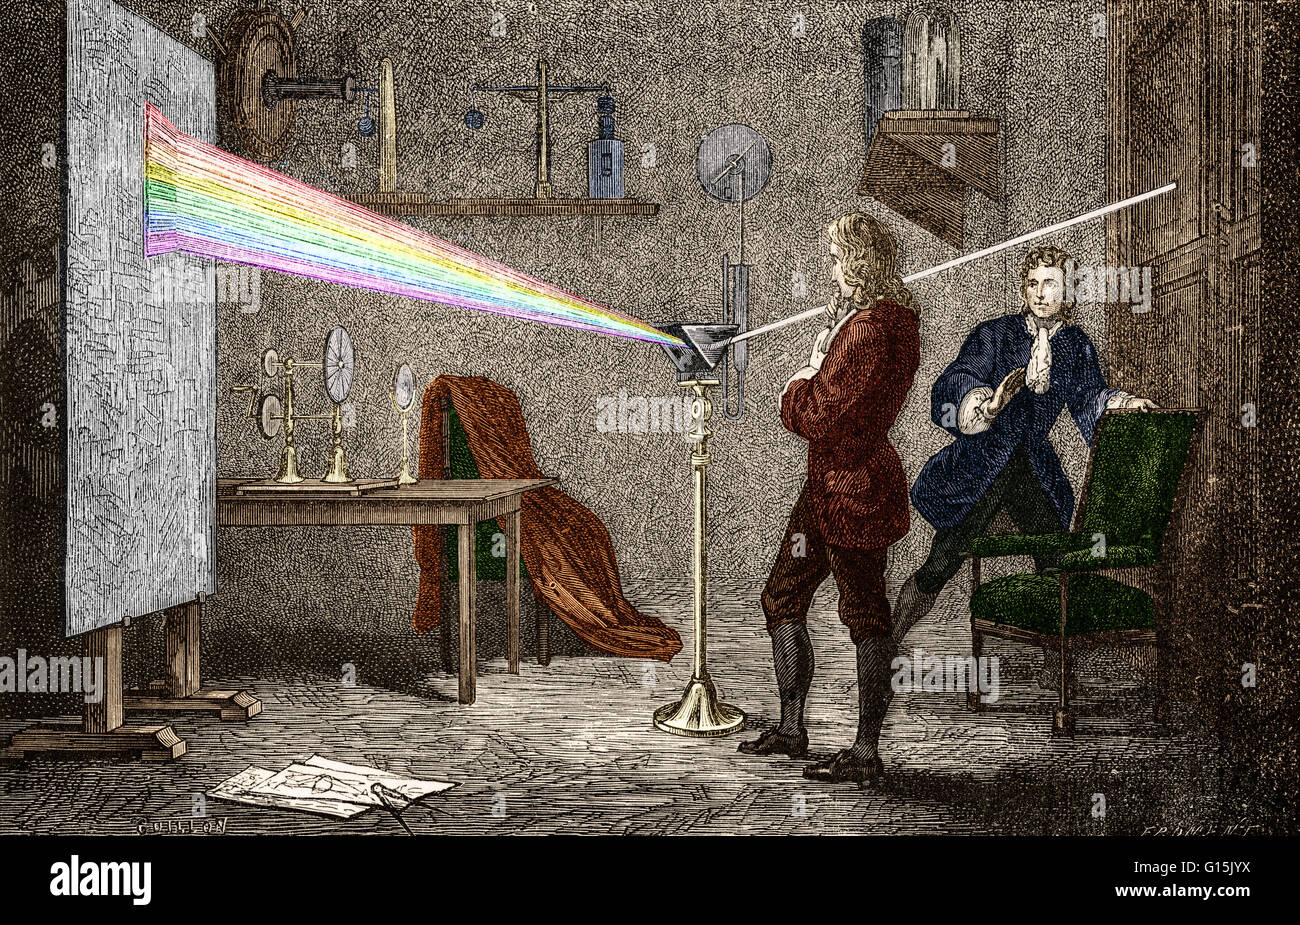 Sir Isaac Newton (1642-1727) war ein englischer Physiker, Mathematiker, Astronom, Naturphilosoph, Alchemist und Theologe. Seine Monographie Philosophae Naturalis Principia Mathematica, veröffentlicht 1687, legt den Grundstein für die meisten der klassischen mech Stockfoto